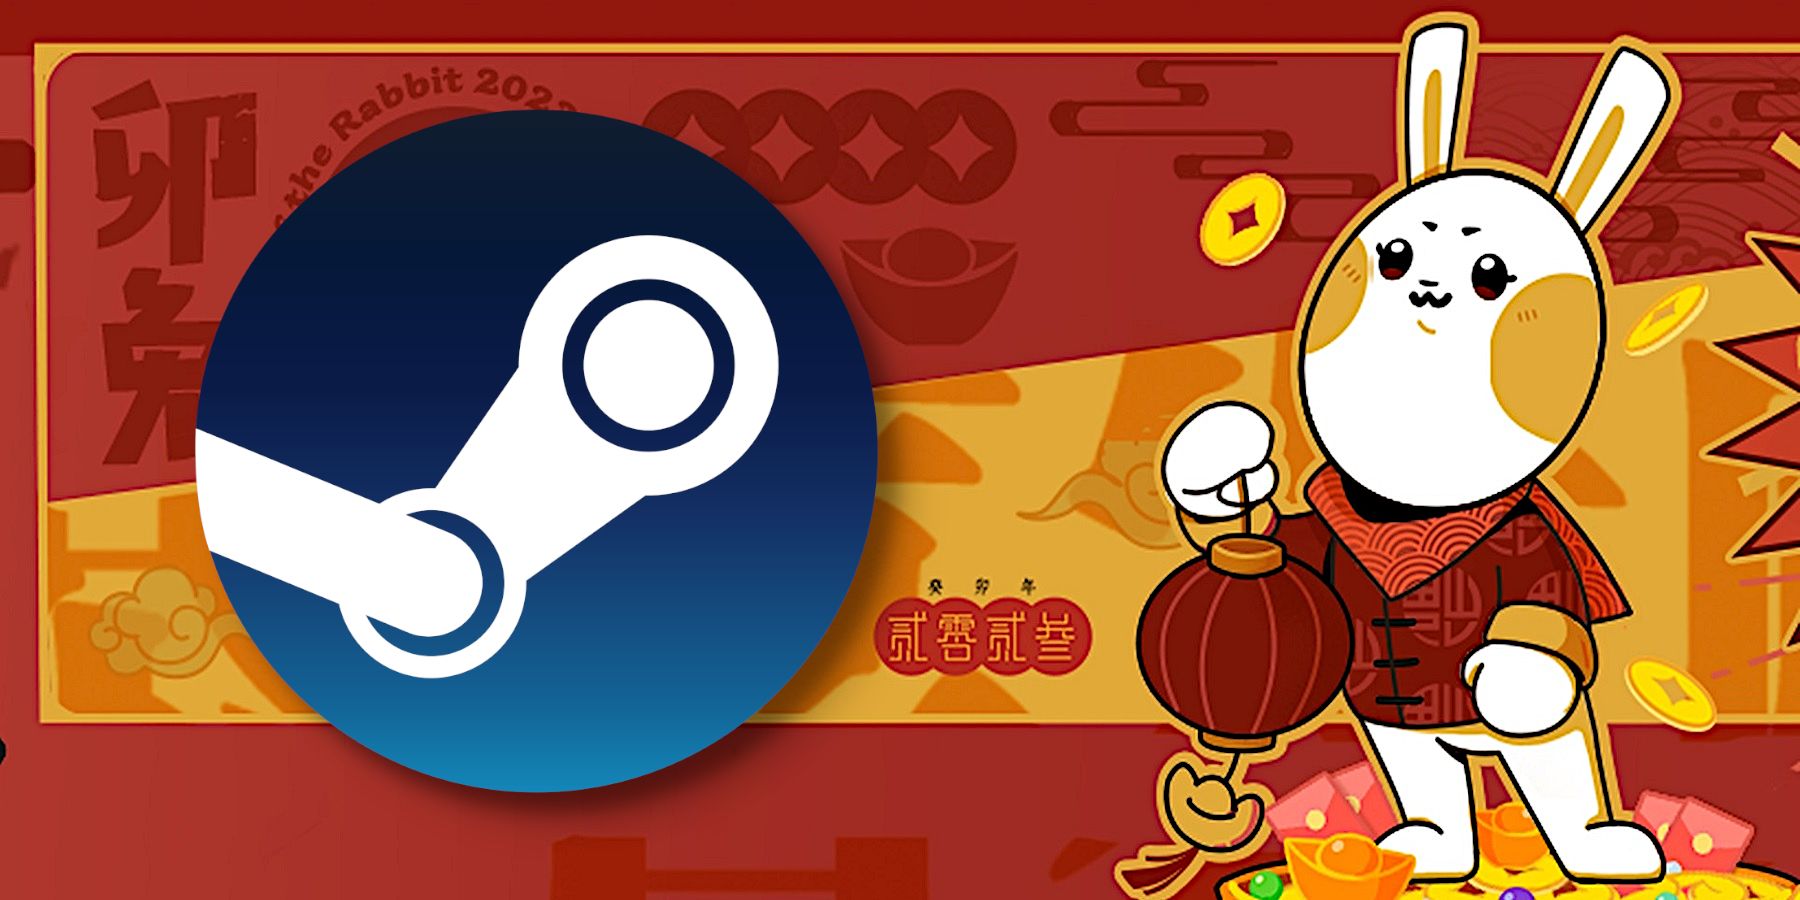 Le logo Steam se rapproche d'un lapin de dessin animé qui tient une lanterne chinoise.